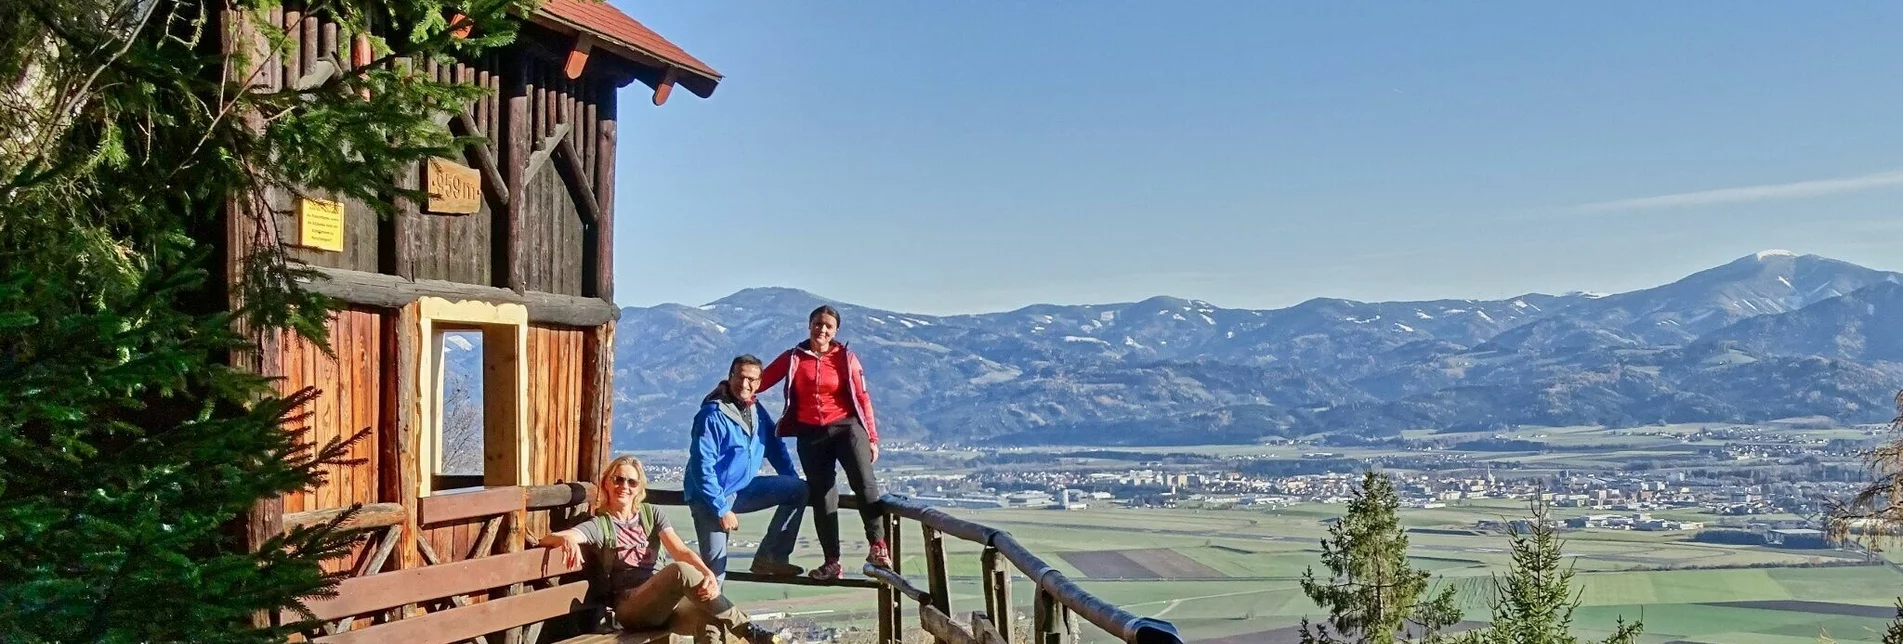 Wanderung Sillweger Aussichtswarte von Rattenberg - Touren-Impression #1 | © Weges OG